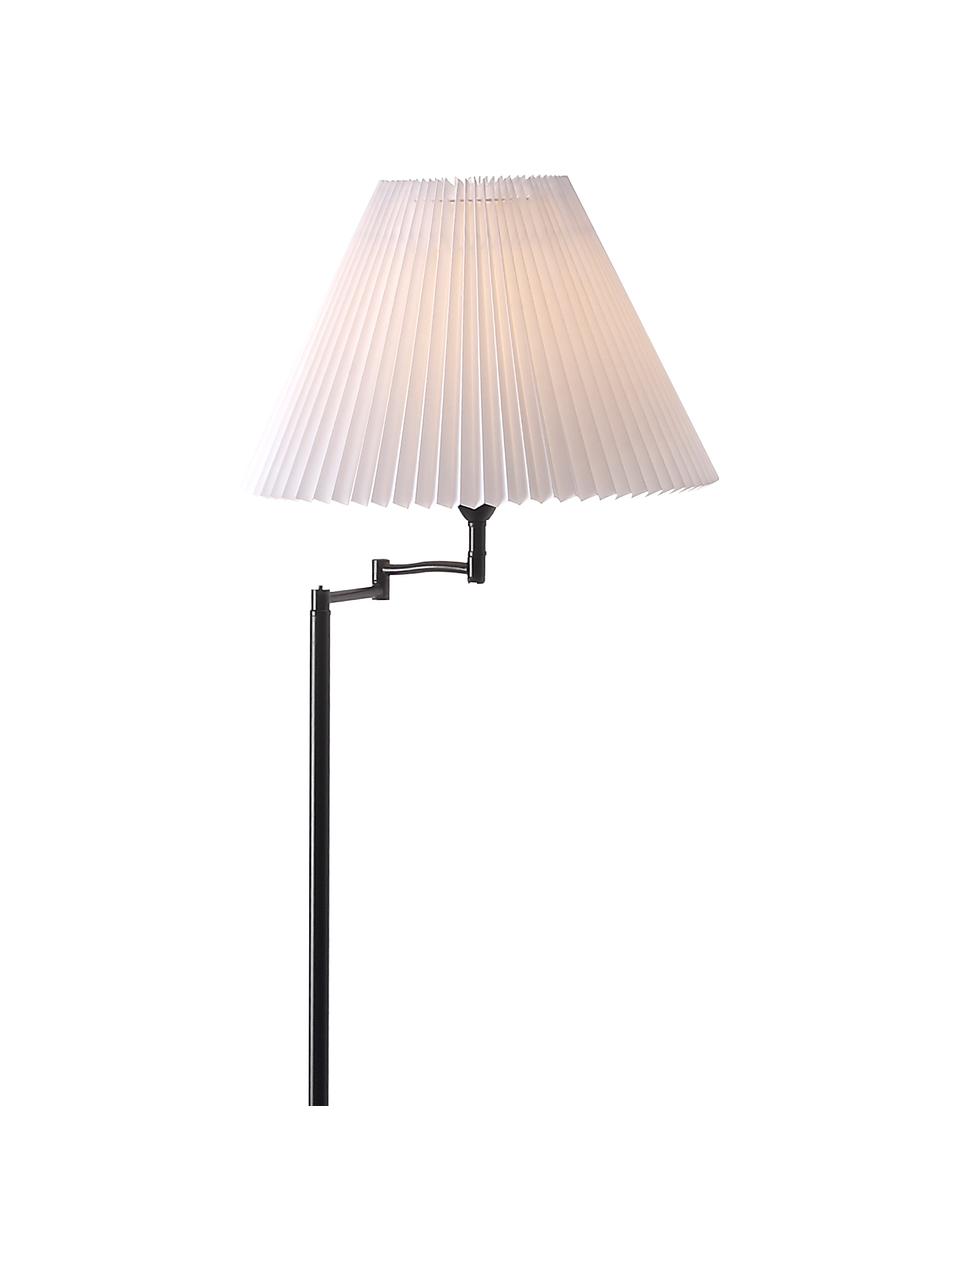 Design vloerlamp Break met plissé lampenkap, Lampenkap: kunststof, Lampvoet: gecoat metaal, Zwart, wit, Ø 44 x H 158 cm